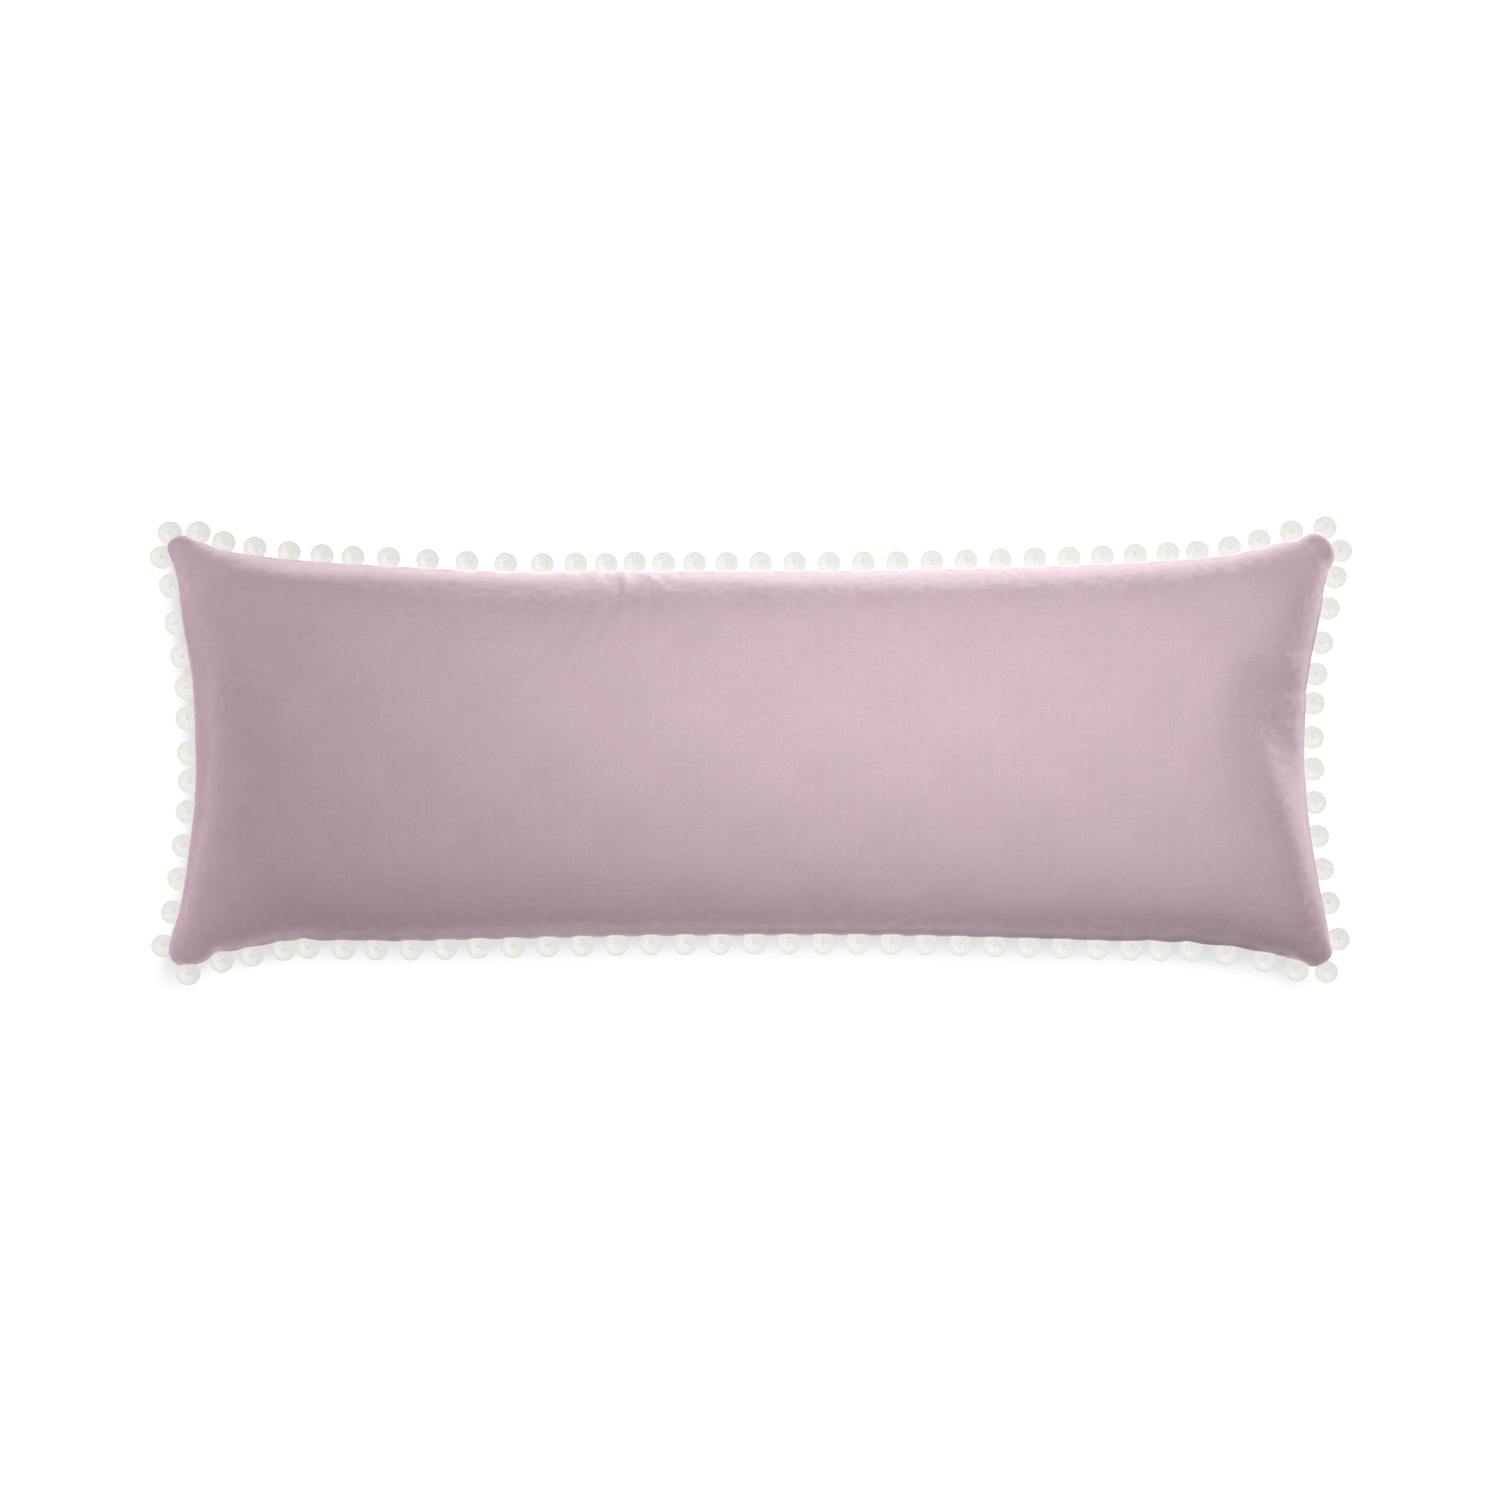 rectangle lilac velvet pillow with white pom poms